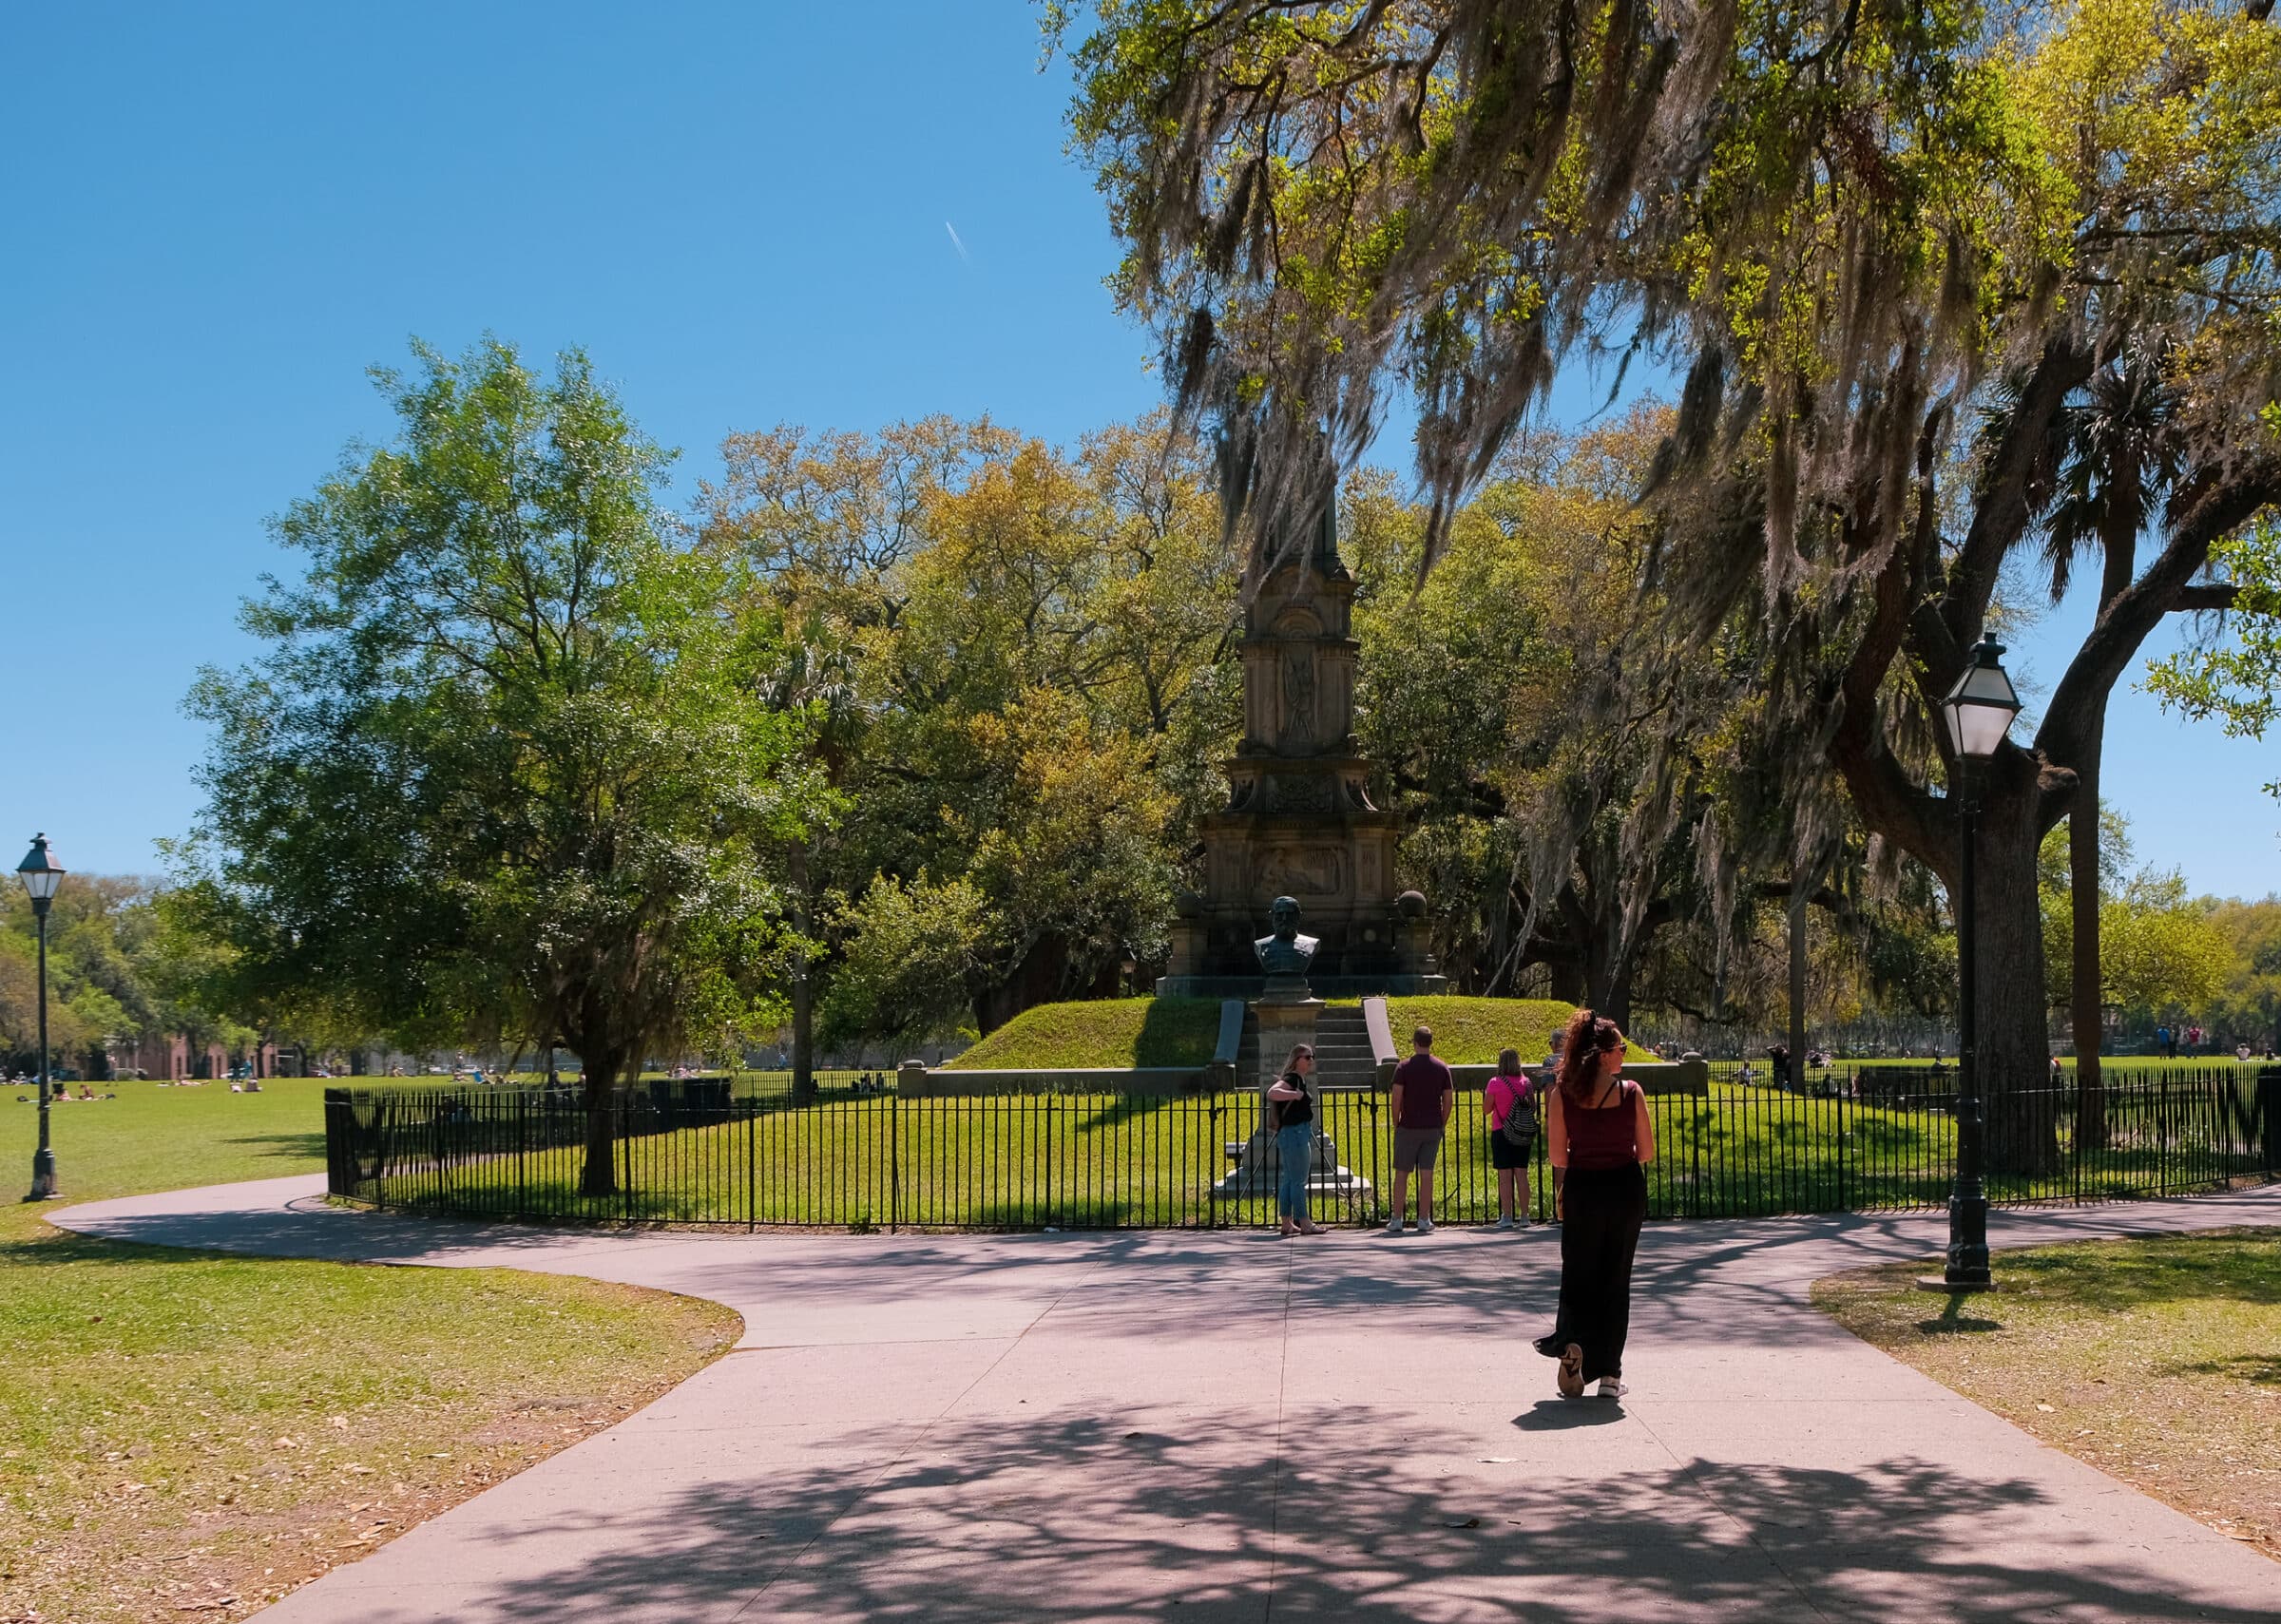 Forsyth Park | Wat te doen + tips voor Savannah, Georgia